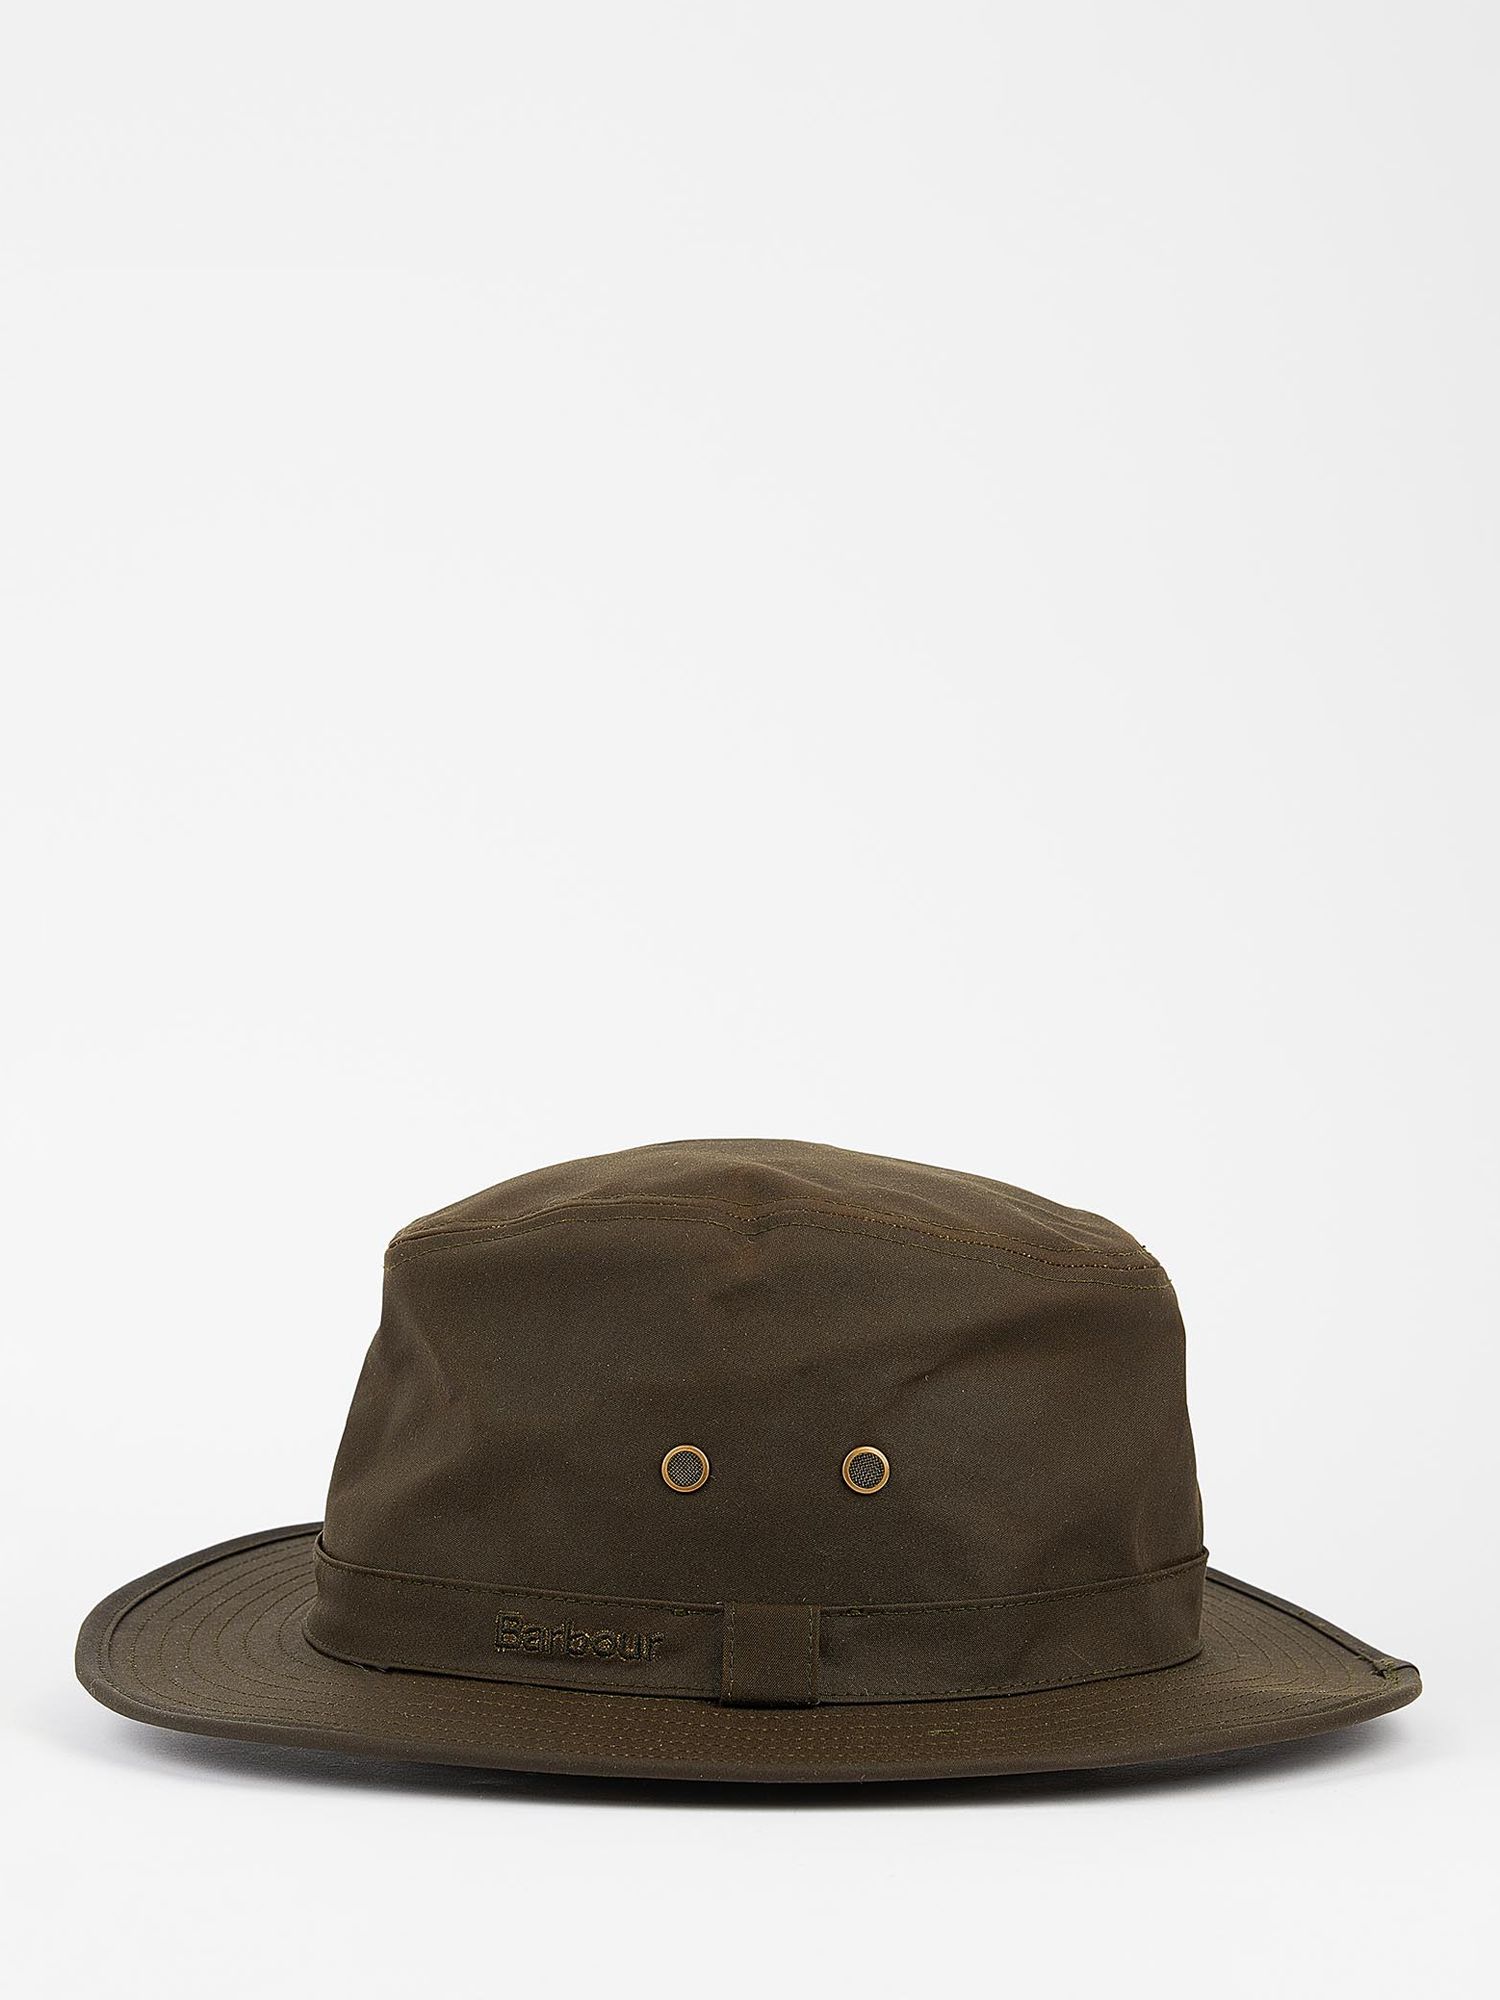 Barbour Dawson Safari Hat, Olive at John Lewis & Partners